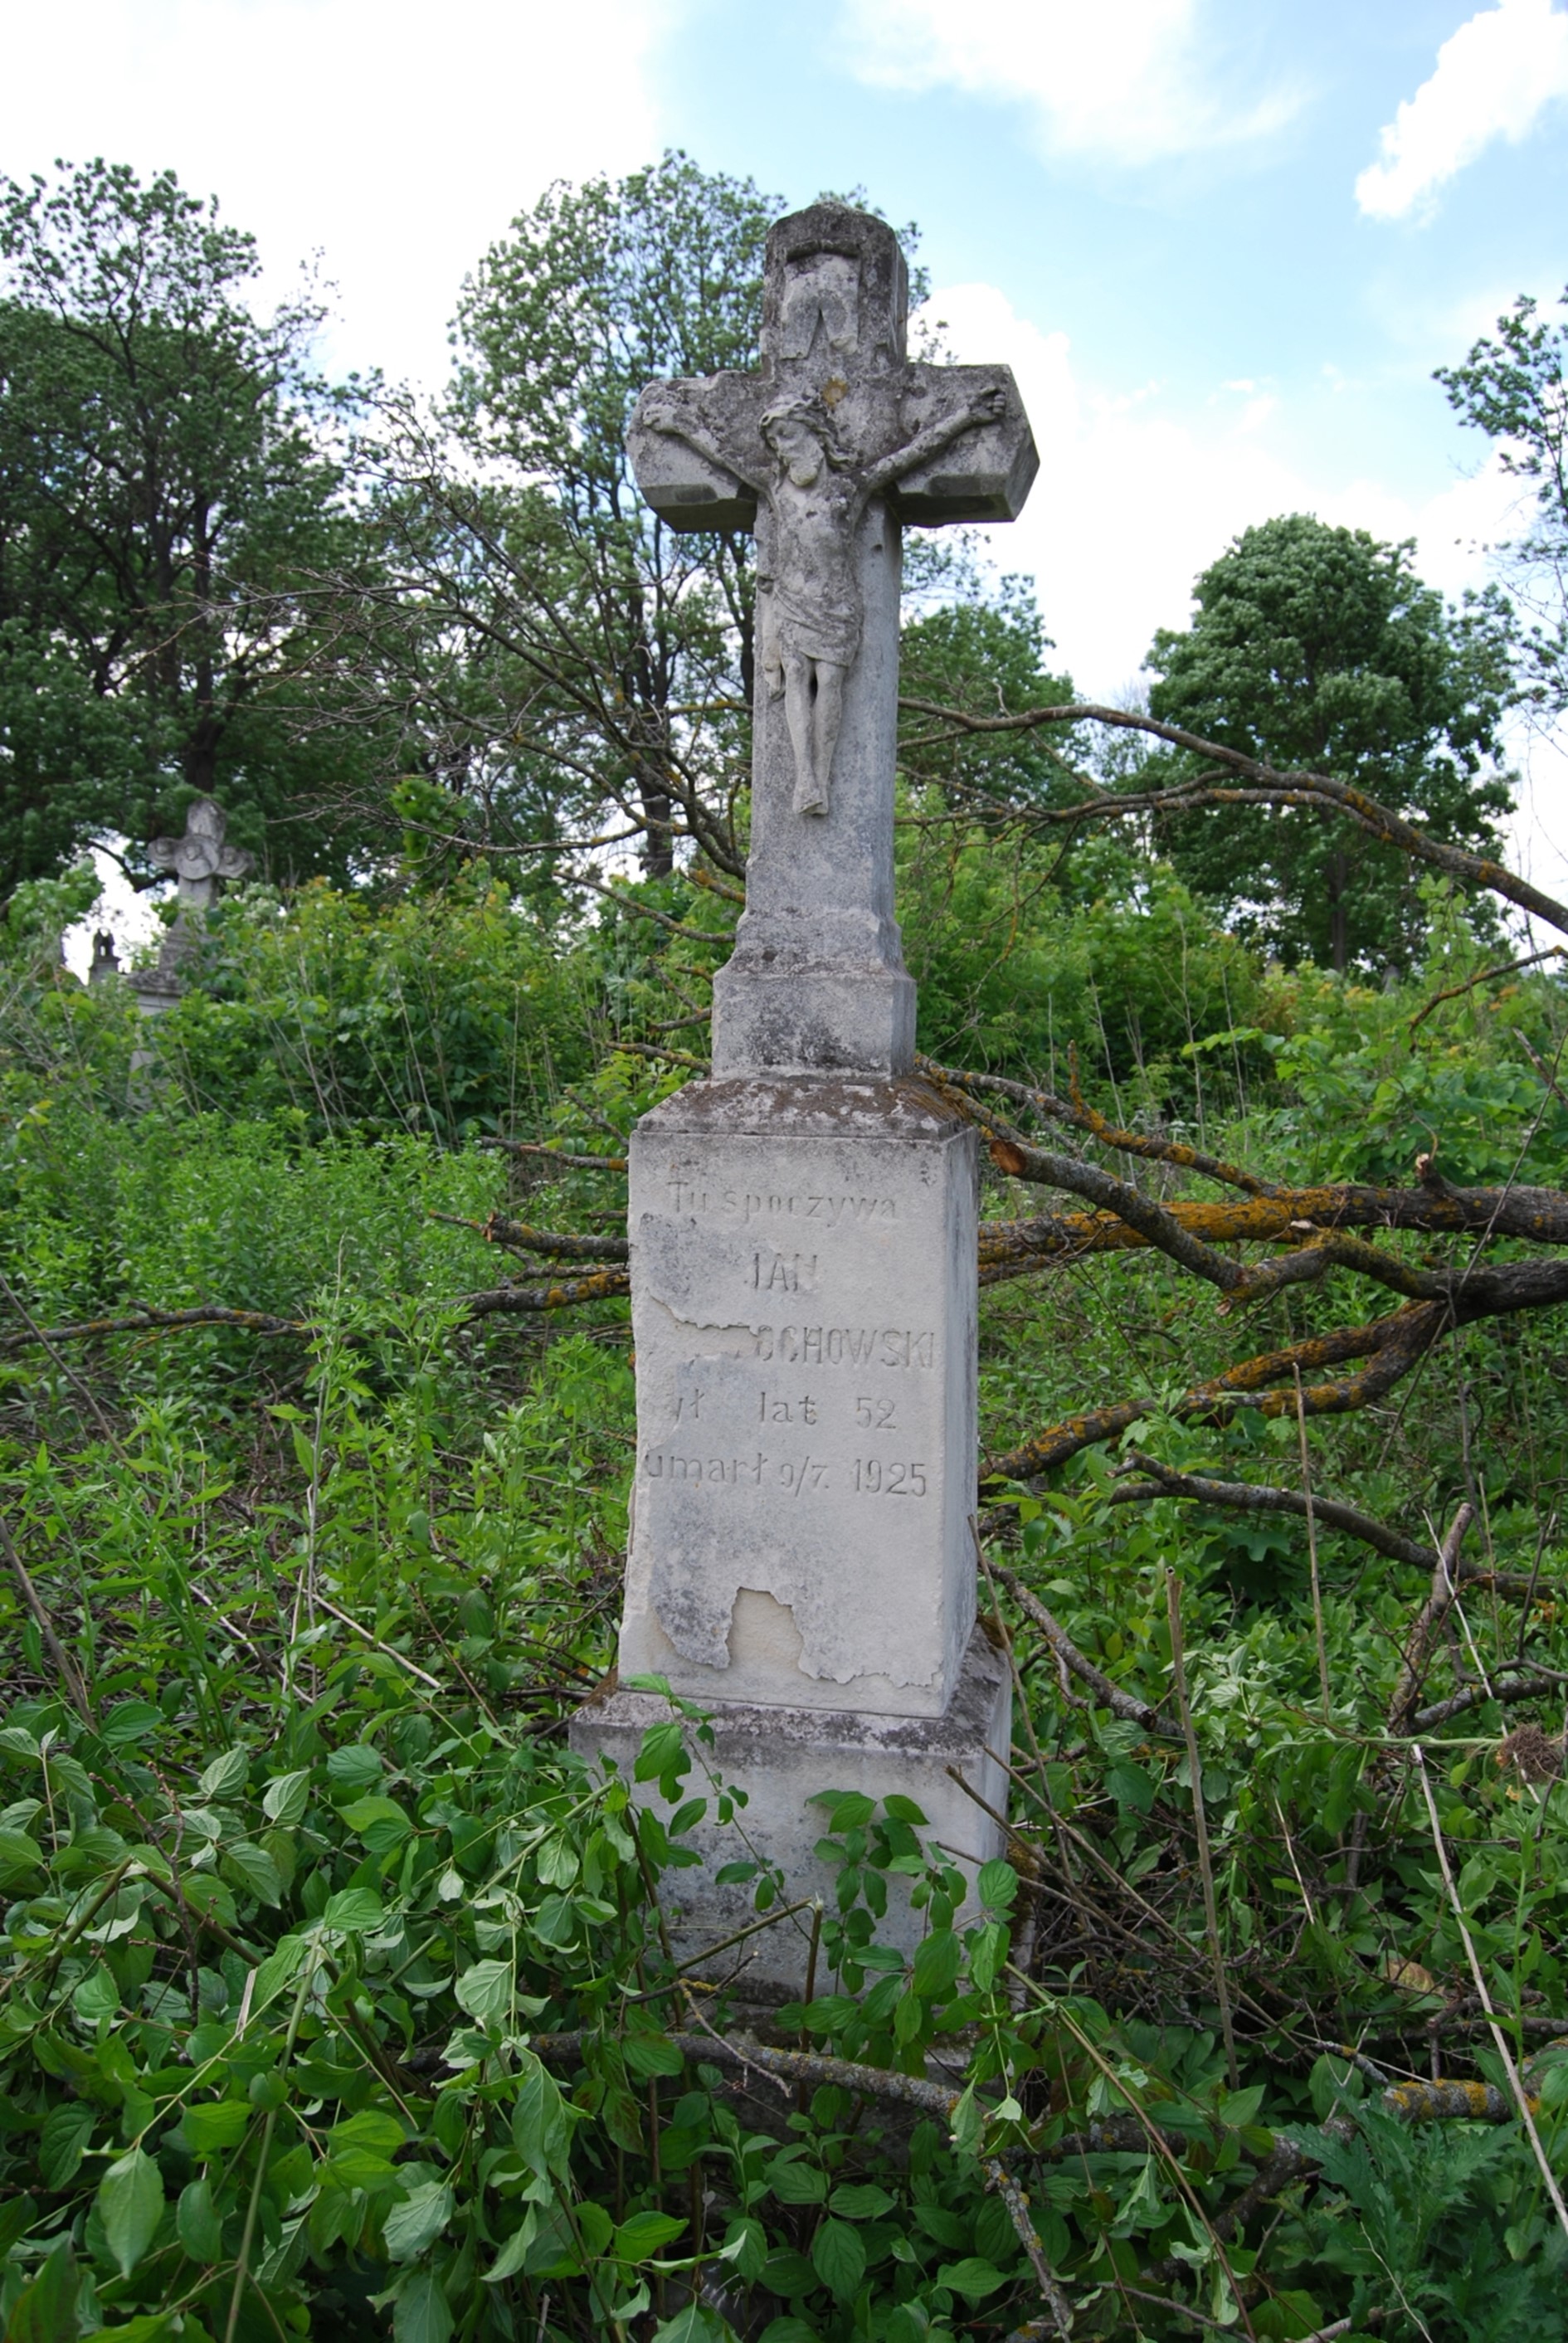 Nagrobek Jana ochowskiego, cmentarz w Zbarażu, stan z 2018